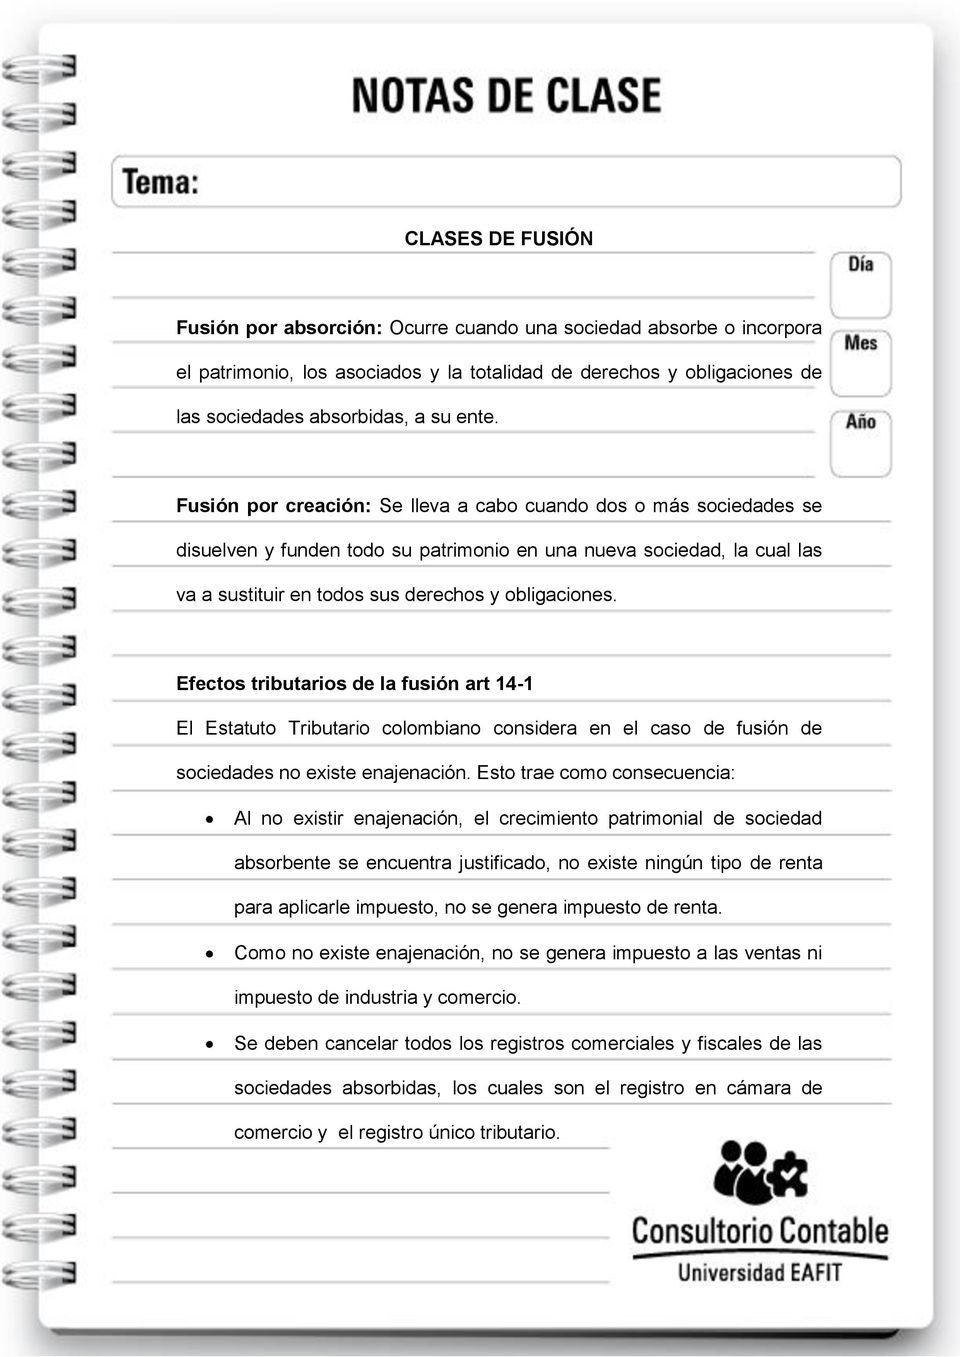 Efectos tributarios de la fusión art 14-1 El Estatuto Tributario colombiano considera en el caso de fusión de sociedades no existe enajenación.